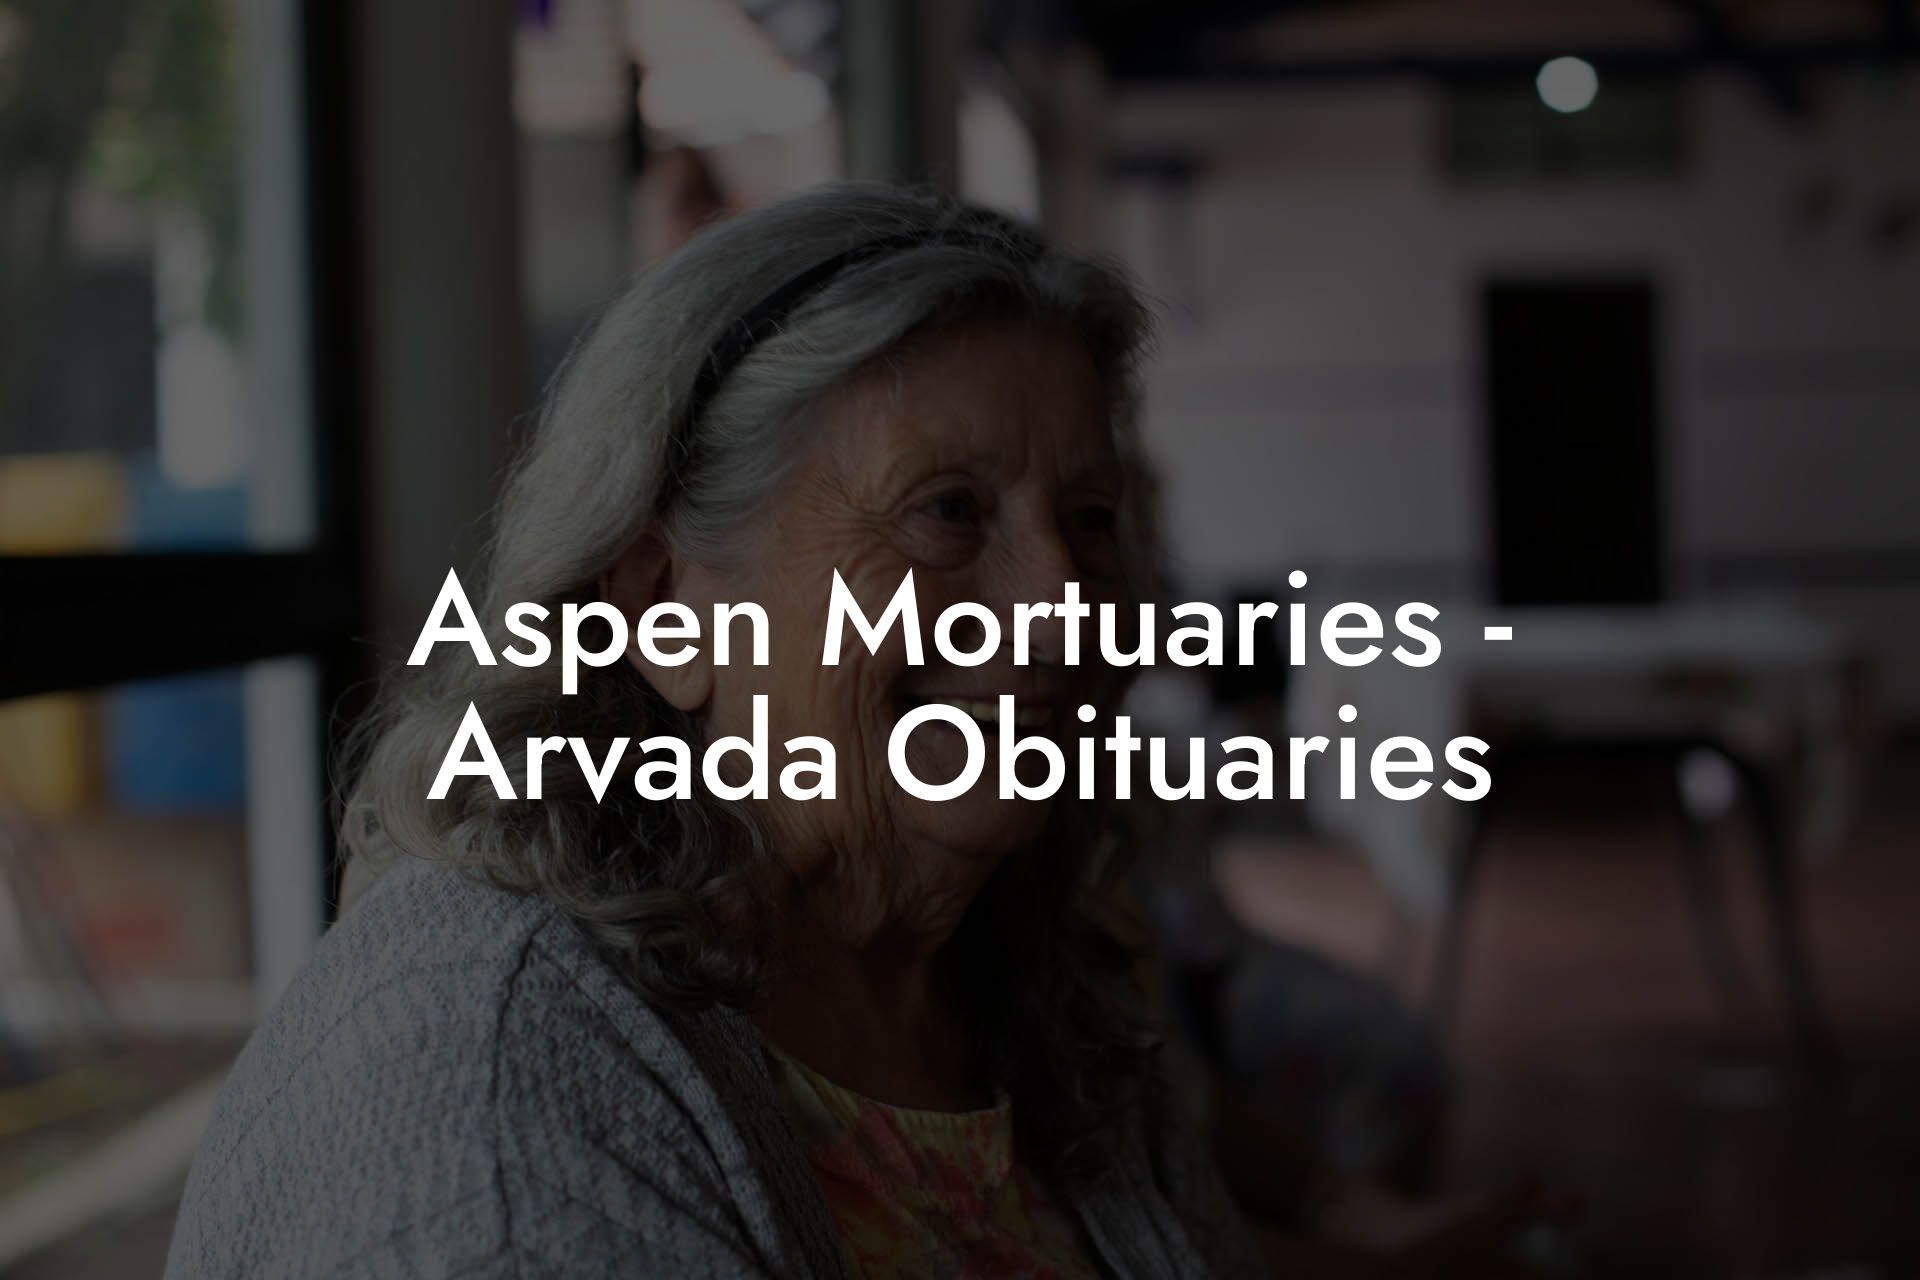 Aspen Mortuaries - Arvada Obituaries